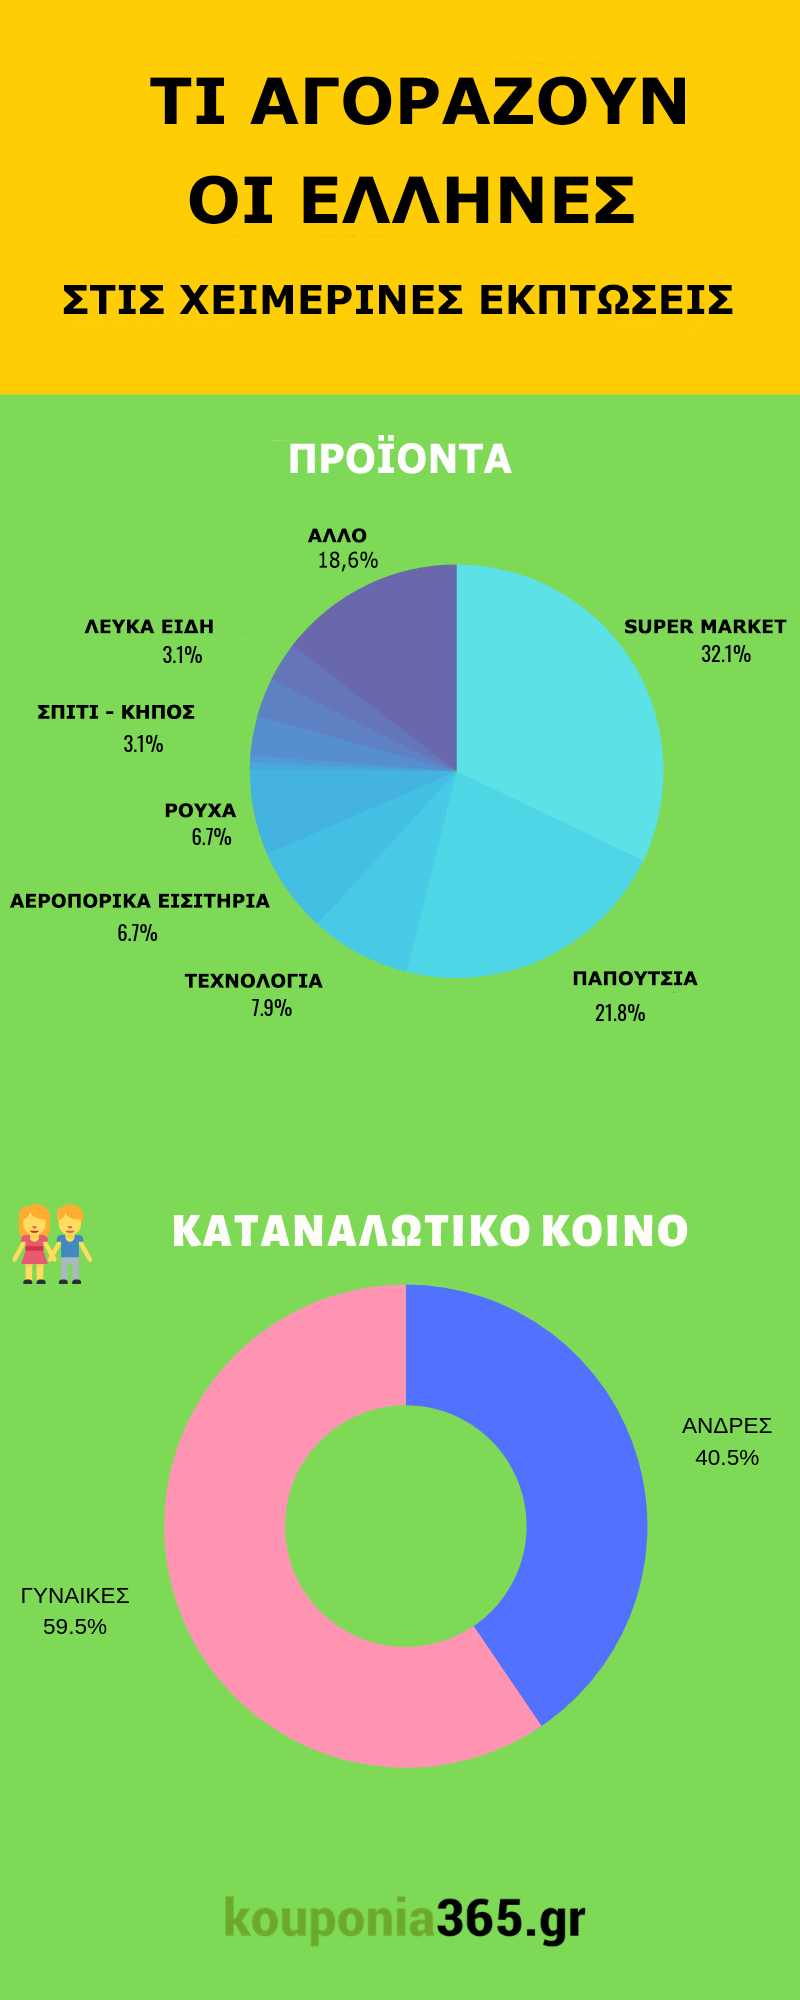 Τι Αγοράζουν Οι Έλληνες Στις Χειμερινές Εκπτώσεις - Infographic created by kouponia365.gr